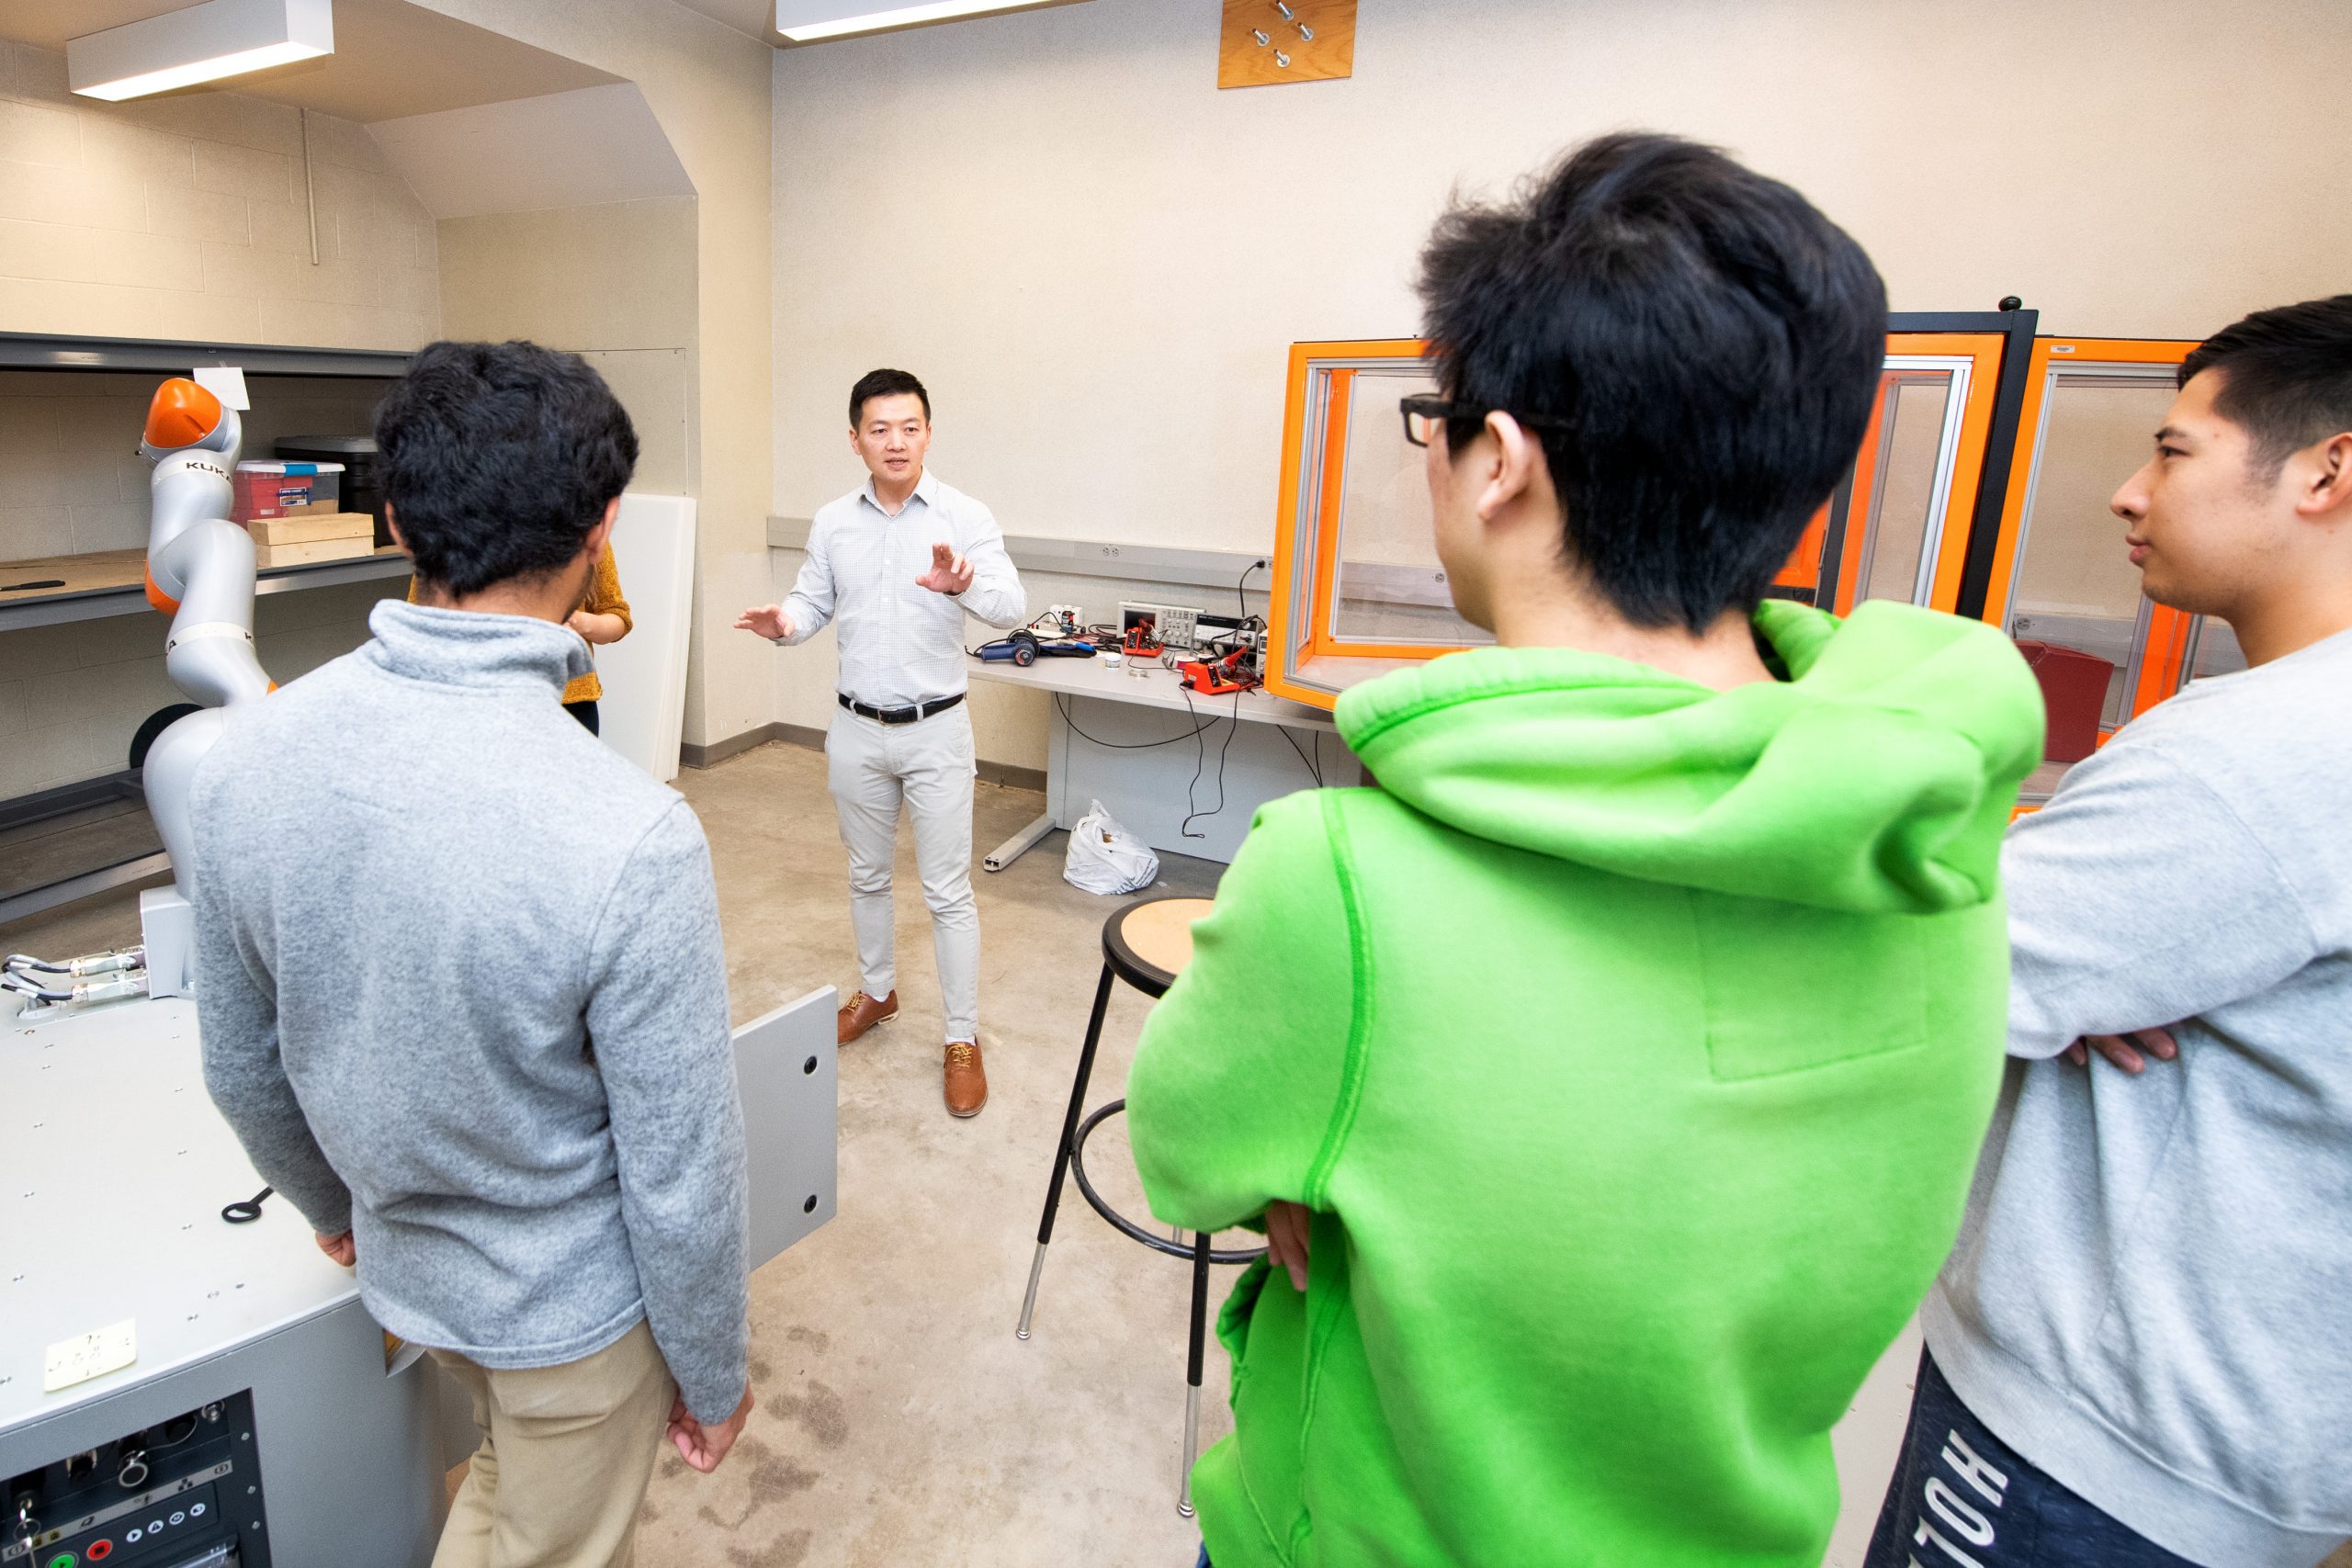 Associate Professor Shaoping Xiao providing a Kuka robot demonstration.